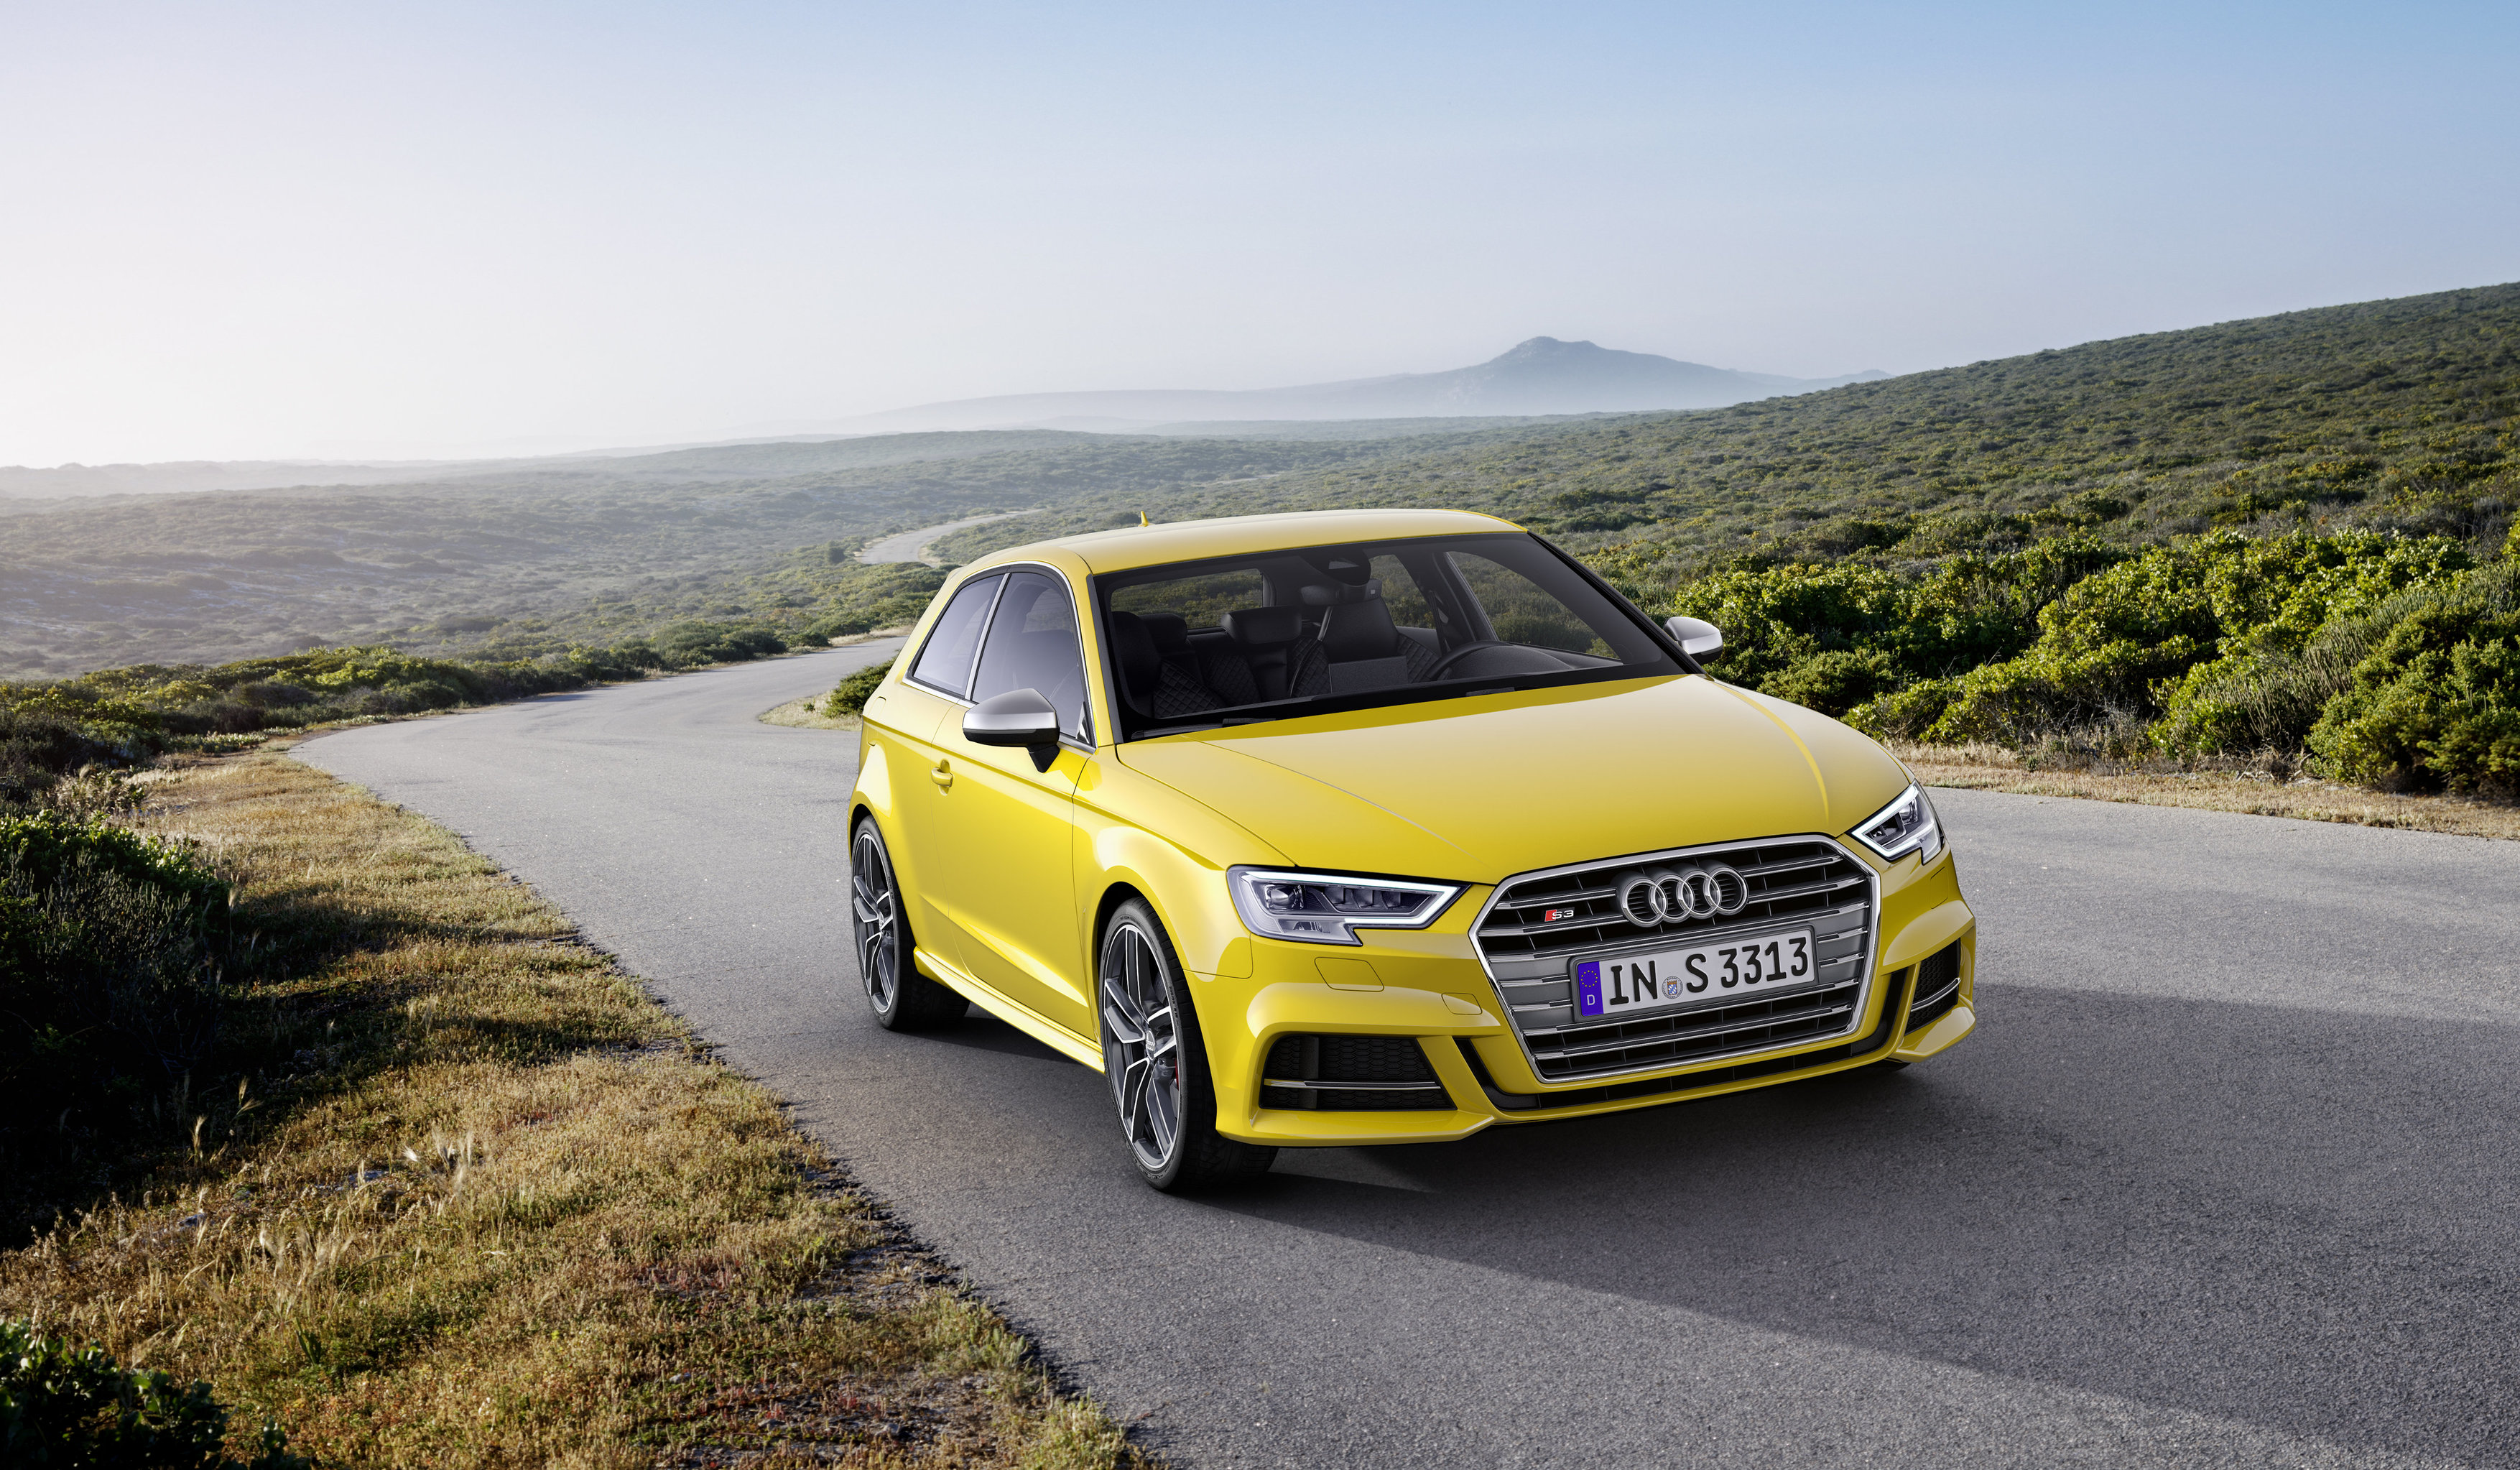 Audi-Umweltprämie 2018: Bis zu 10.000 € für Ihren alten ...